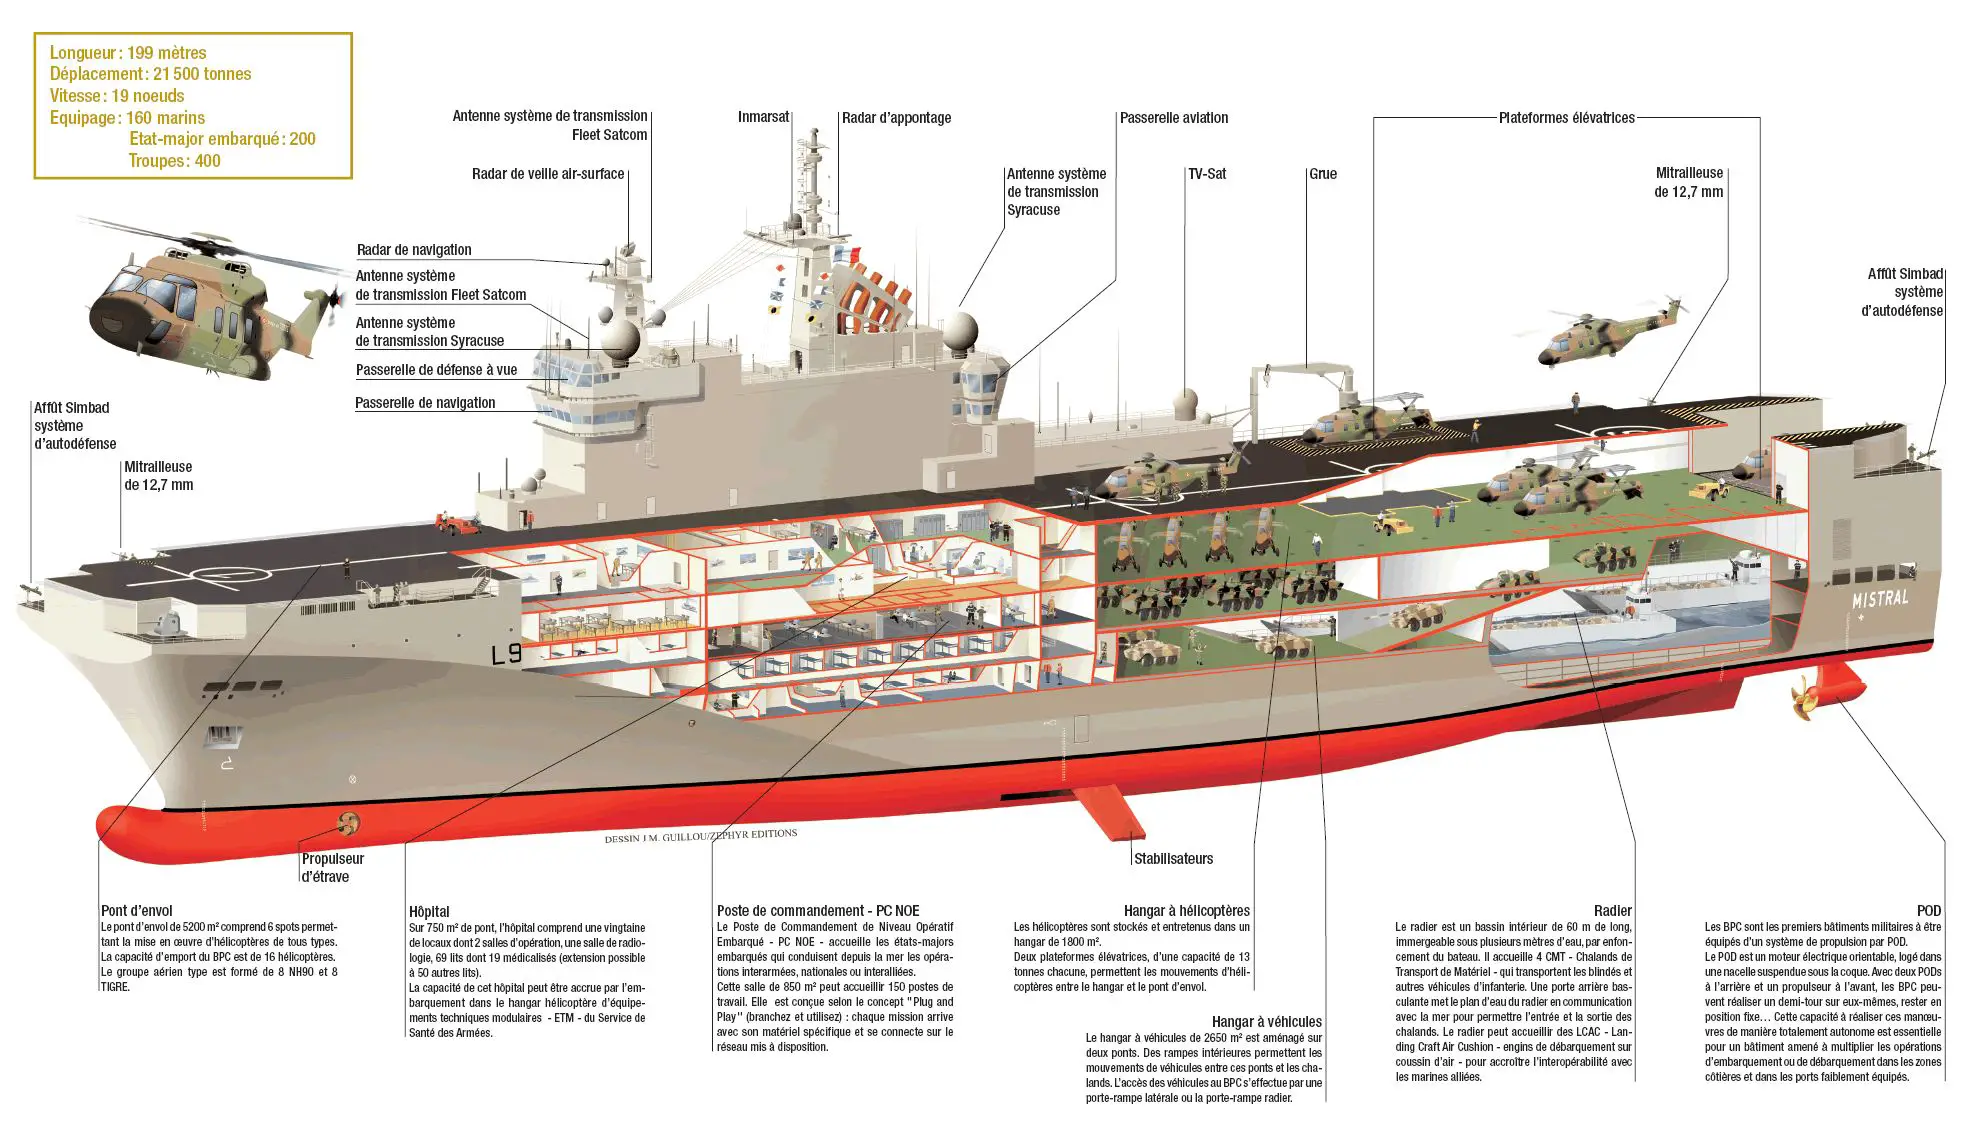 La Russie choisi le Mistral pour équiper sa marine